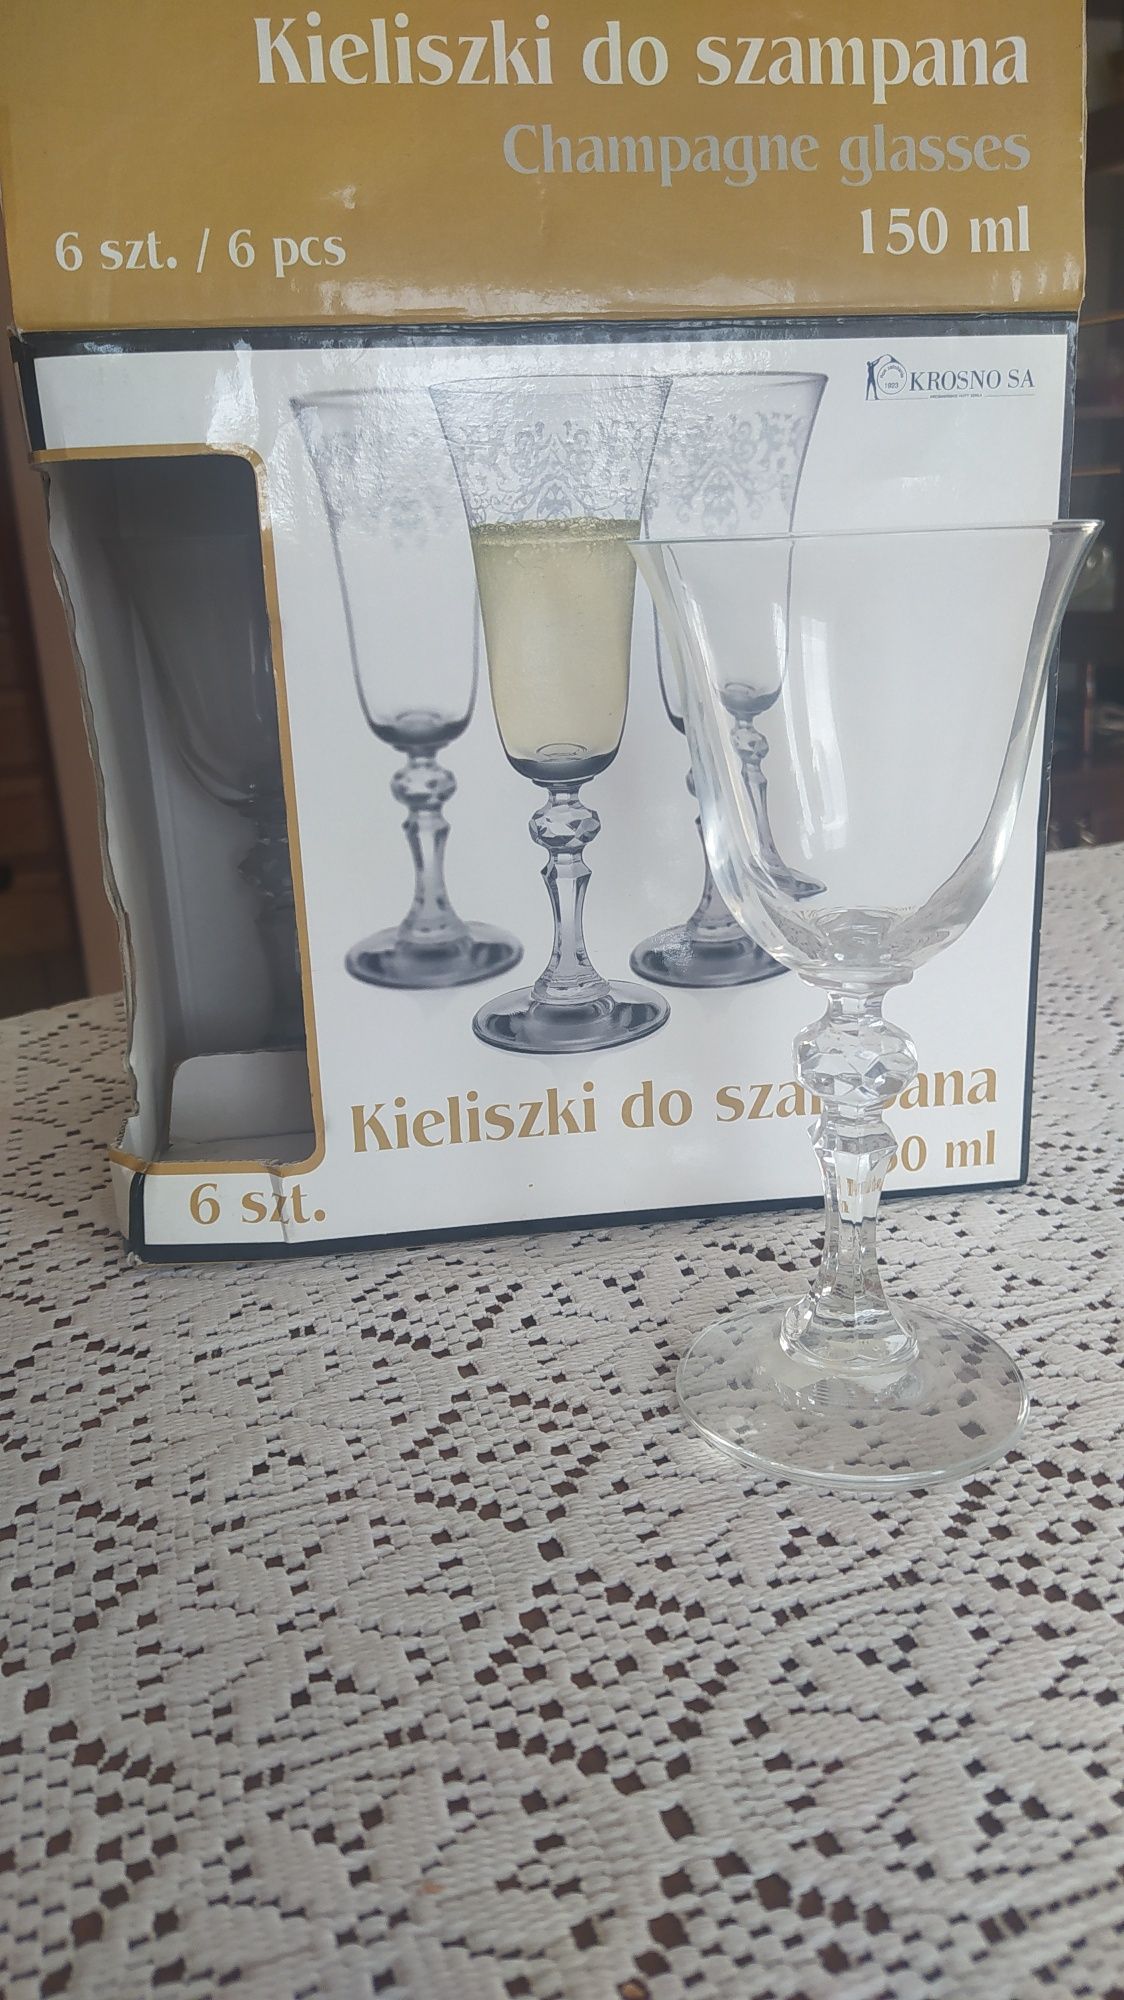 Kieliszki do szampana 150ml Krosno polskie